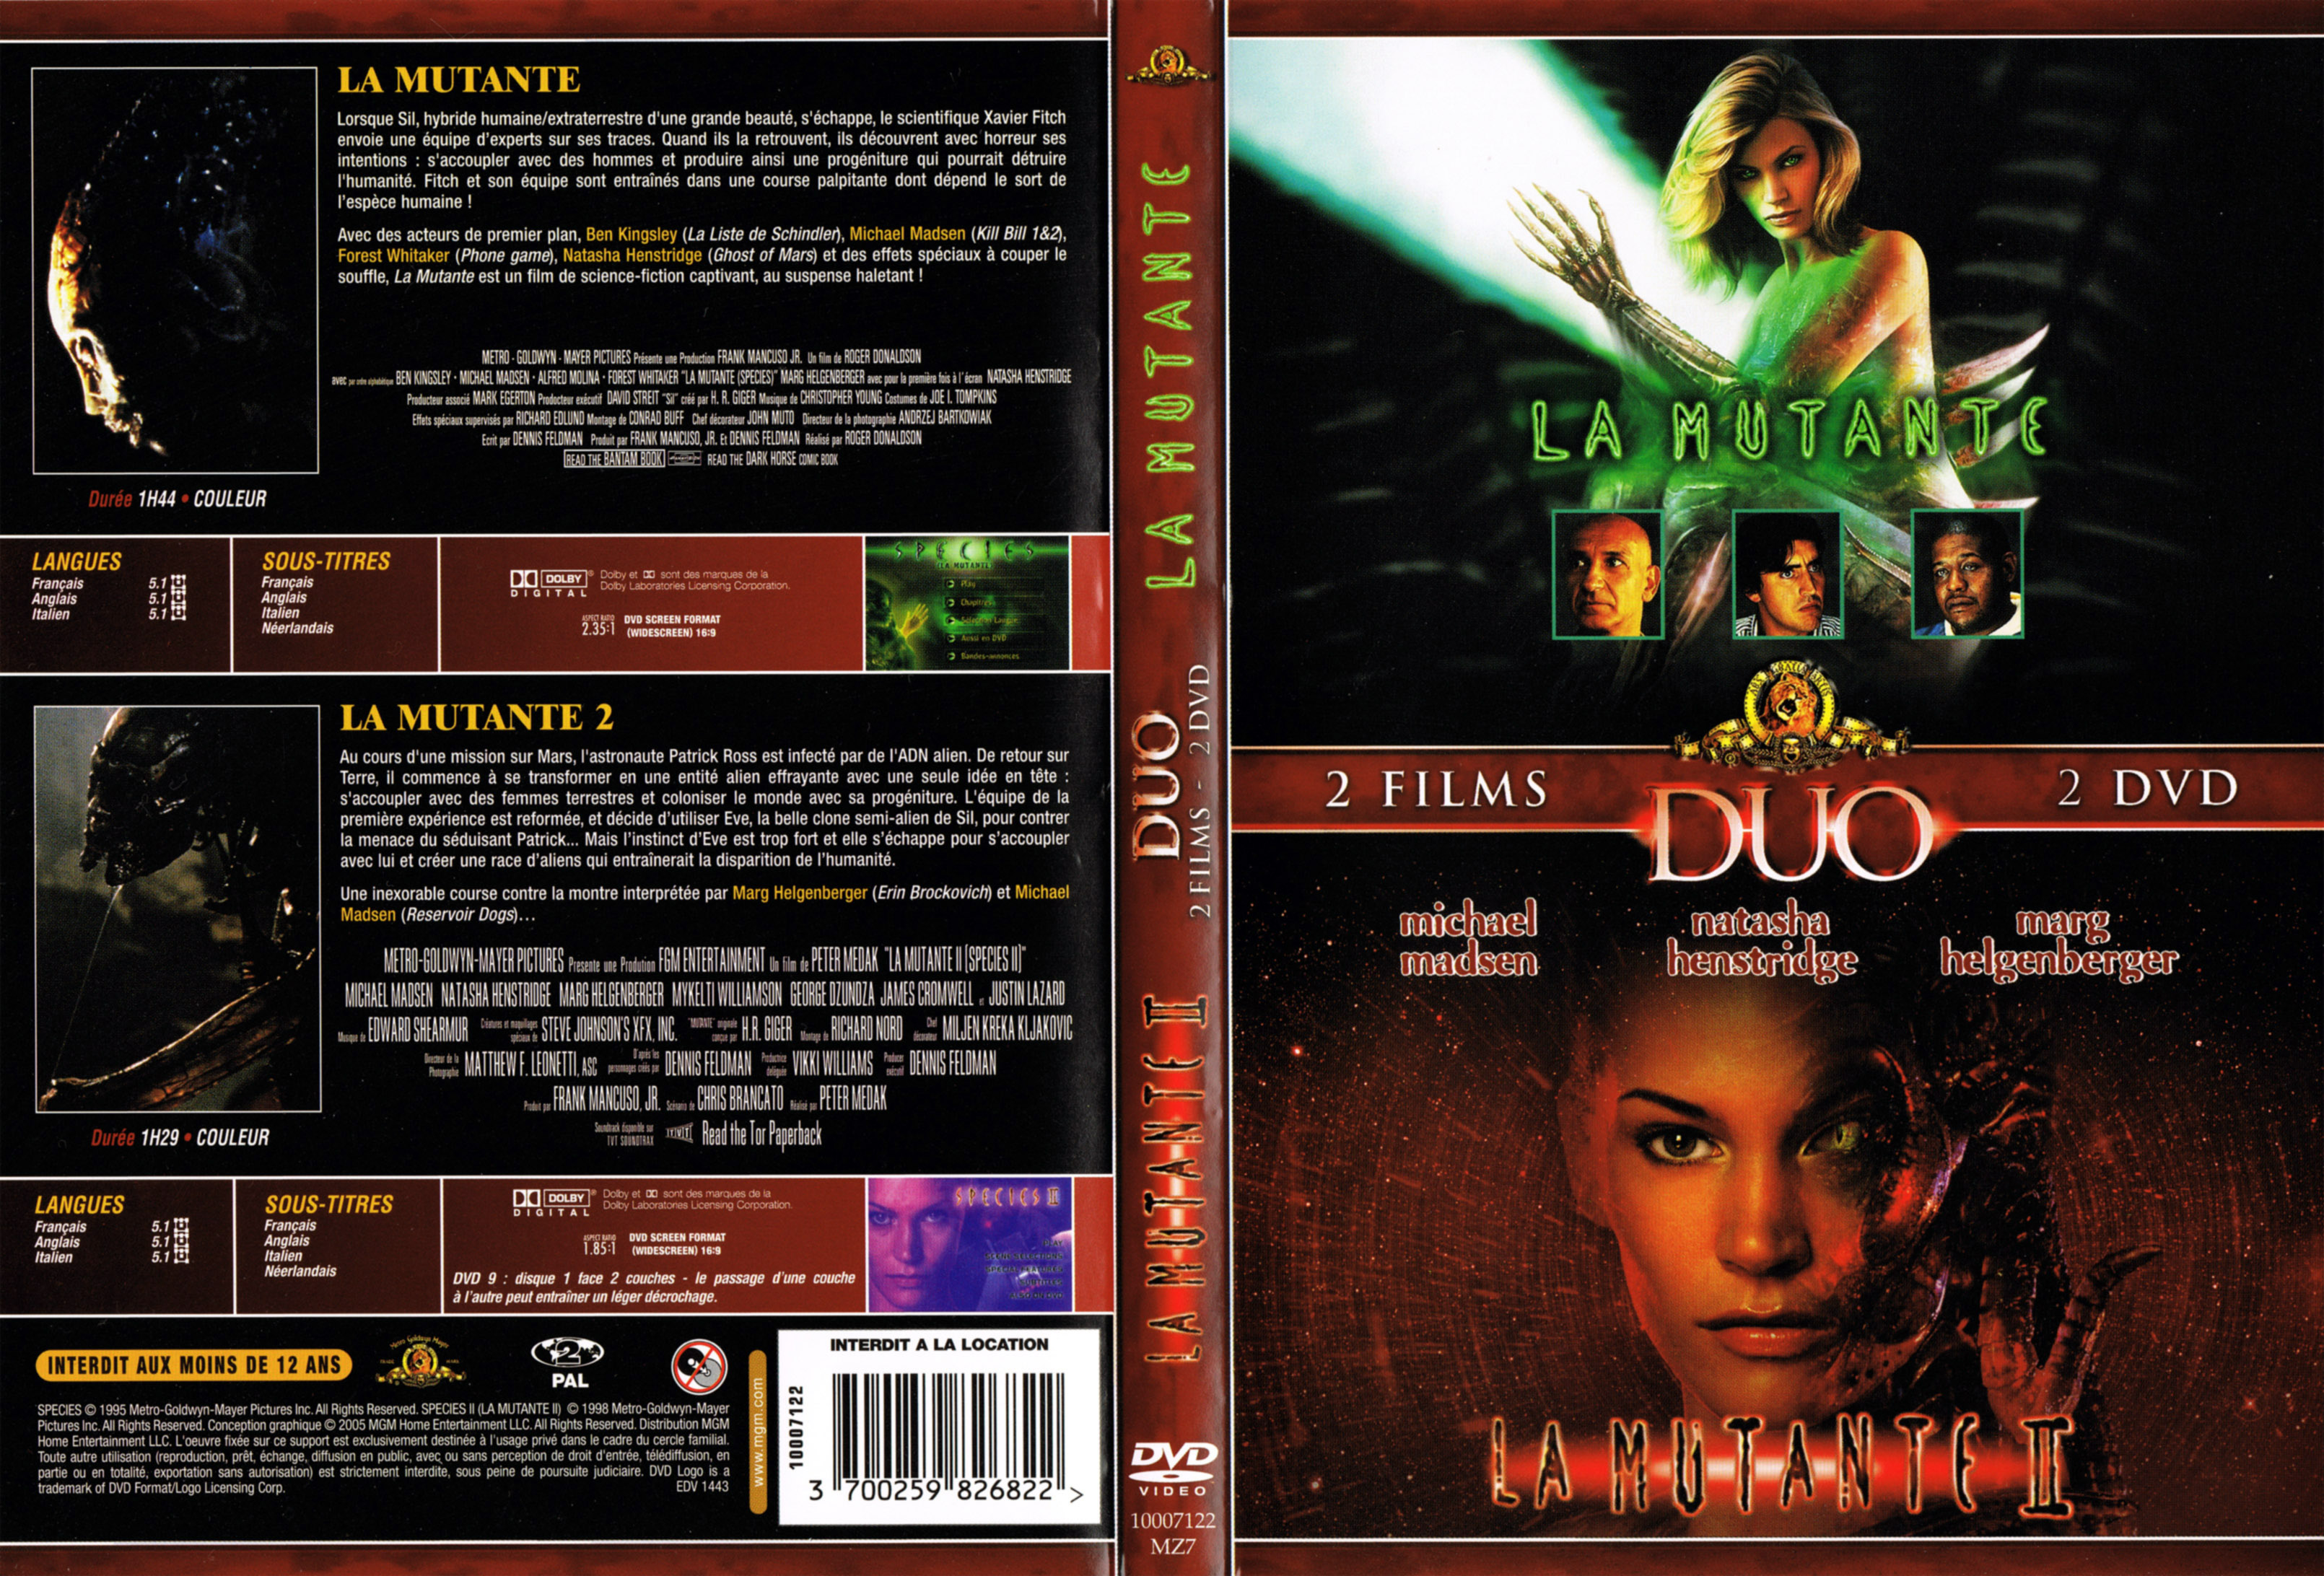 Jaquette DVD La mutante 1 et 2